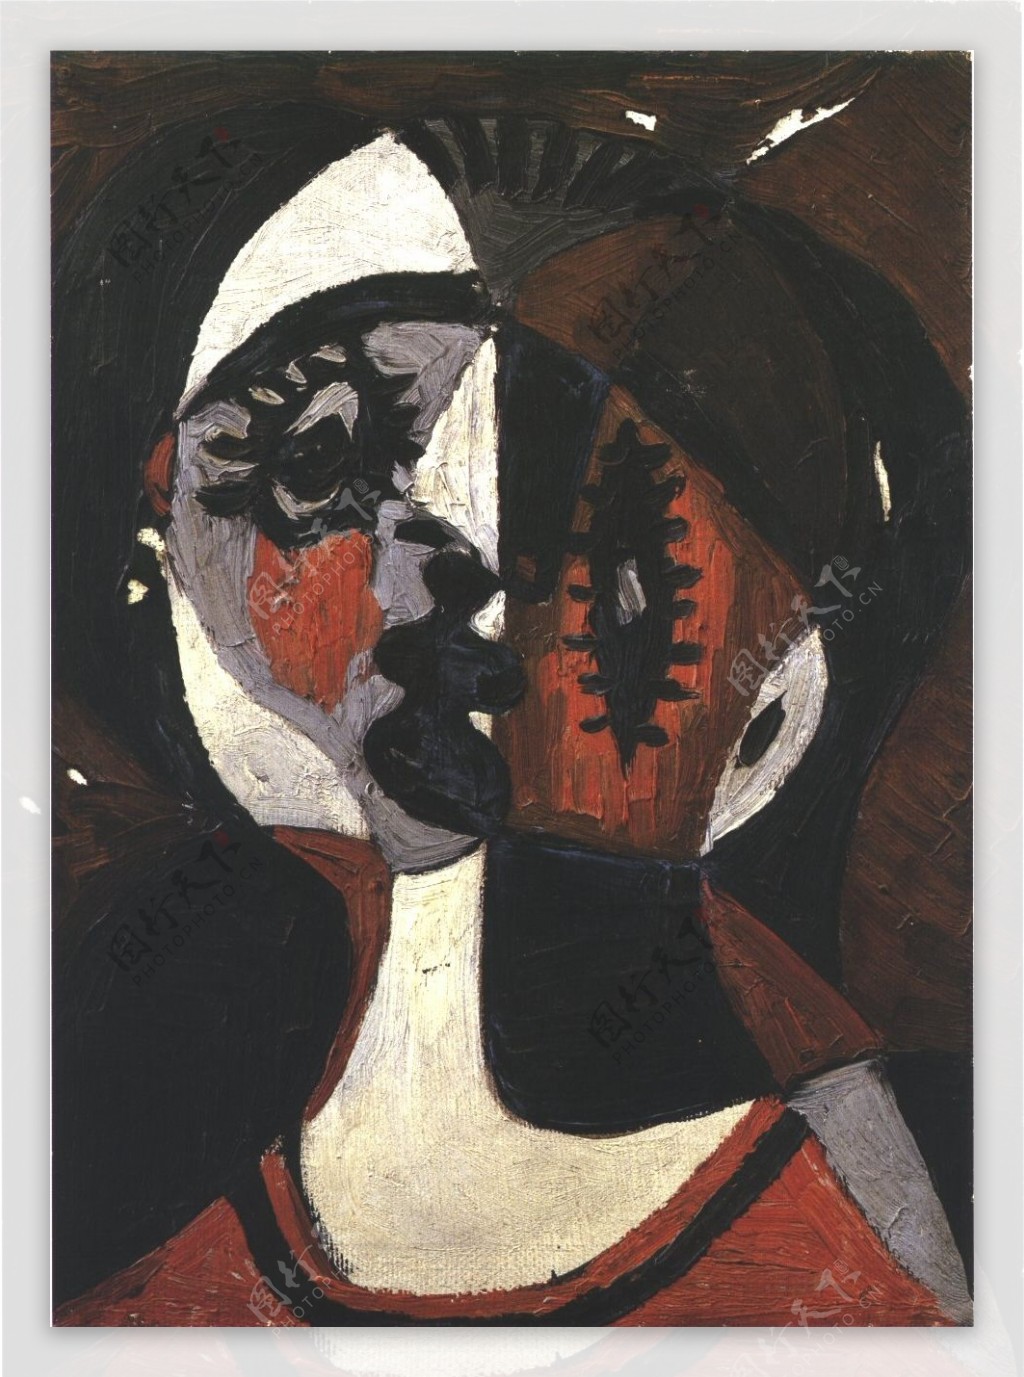 1926Visage1西班牙画家巴勃罗毕加索抽象油画人物人体油画装饰画